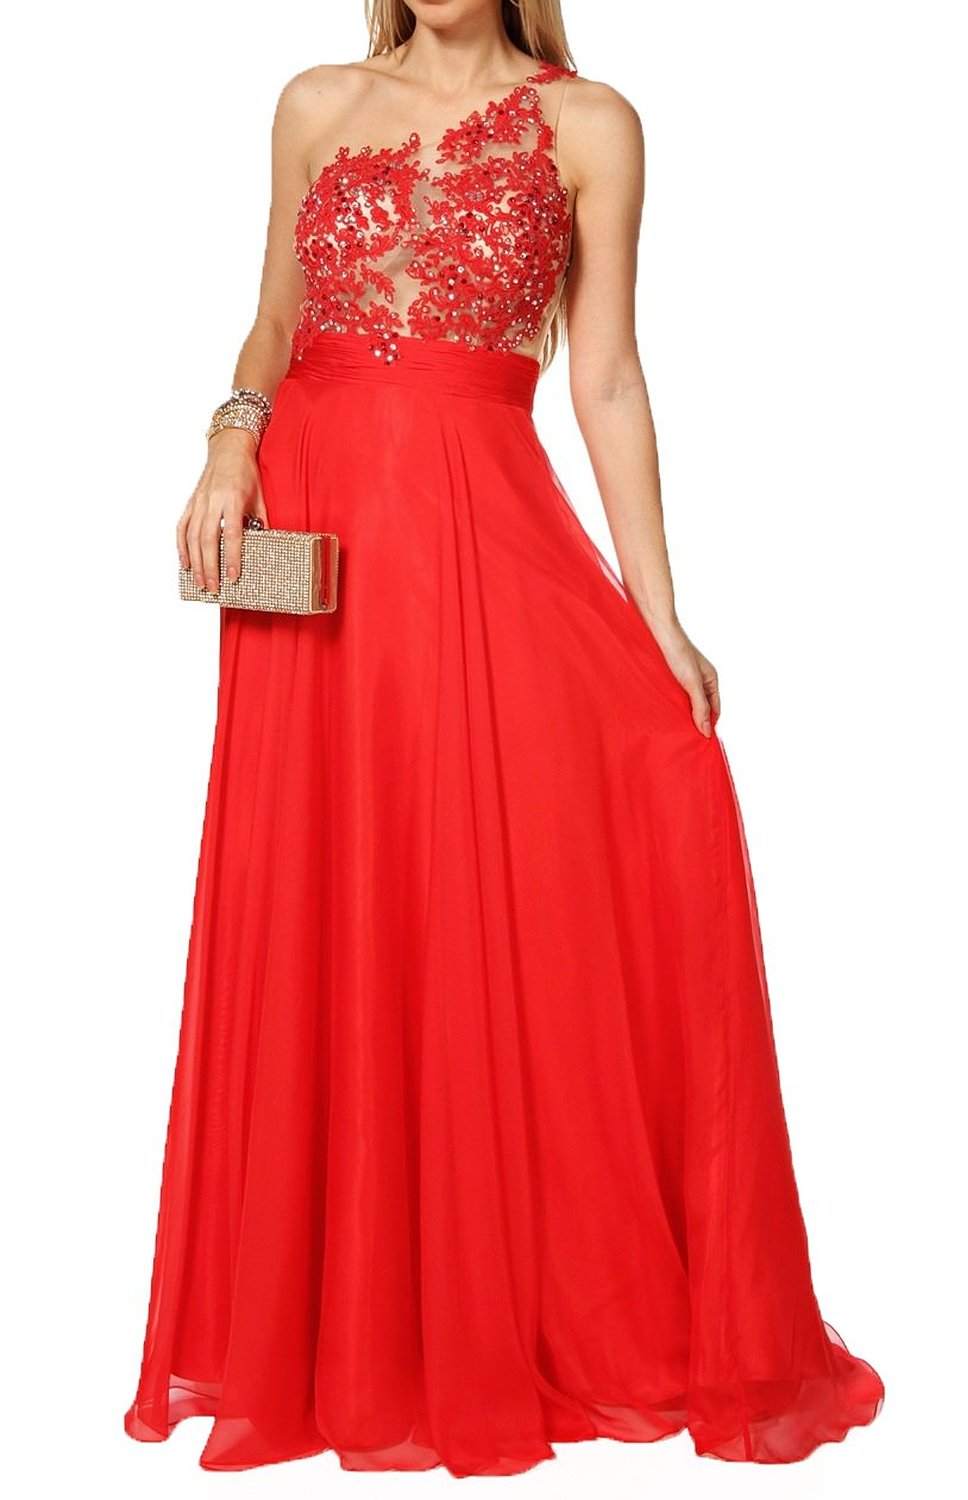 sheer top red dress